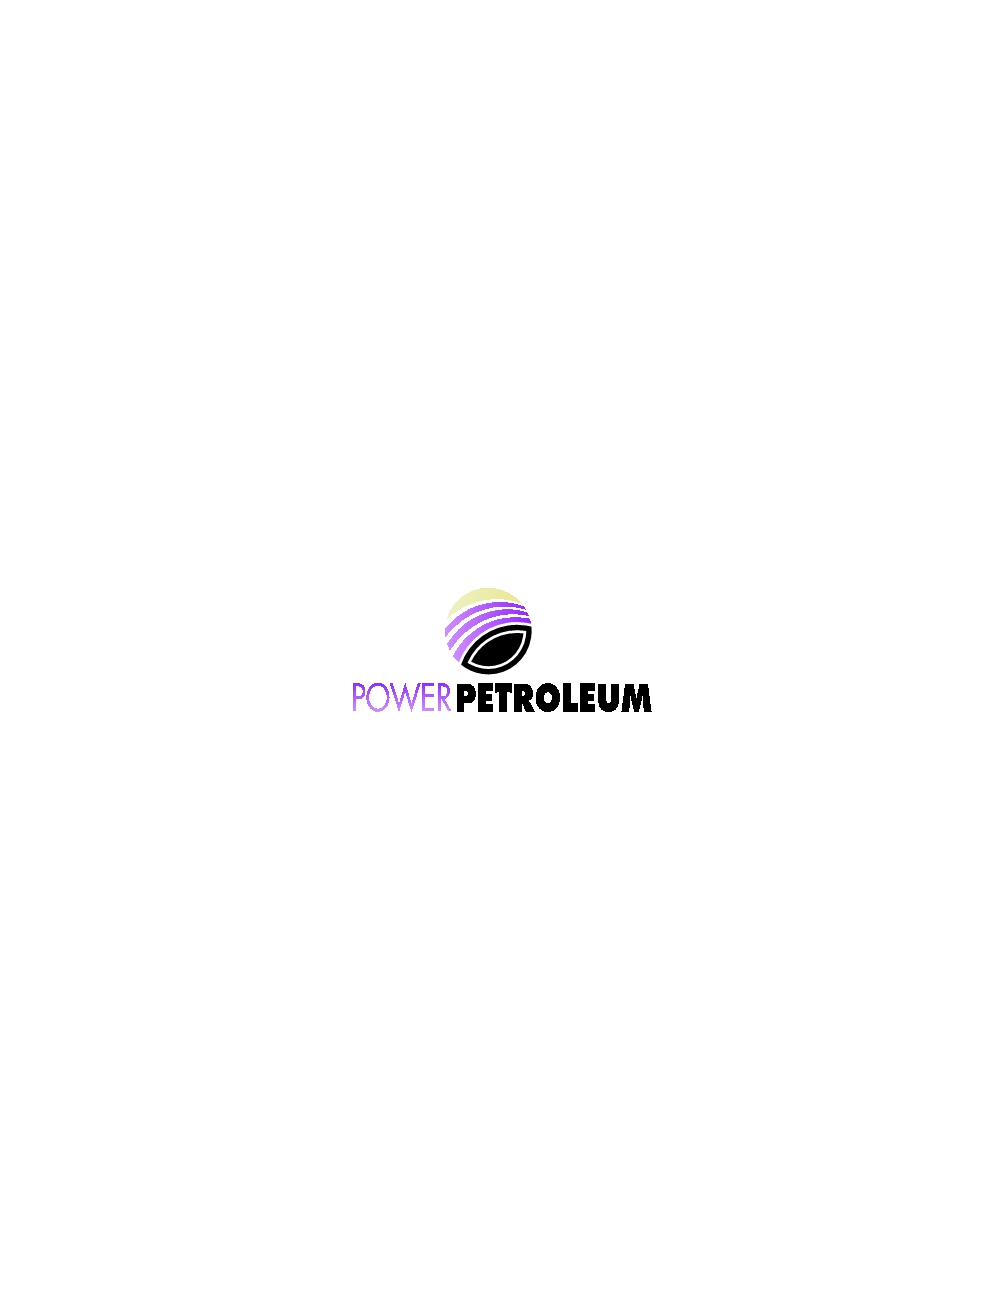 Power Petroleum, Inc. logo